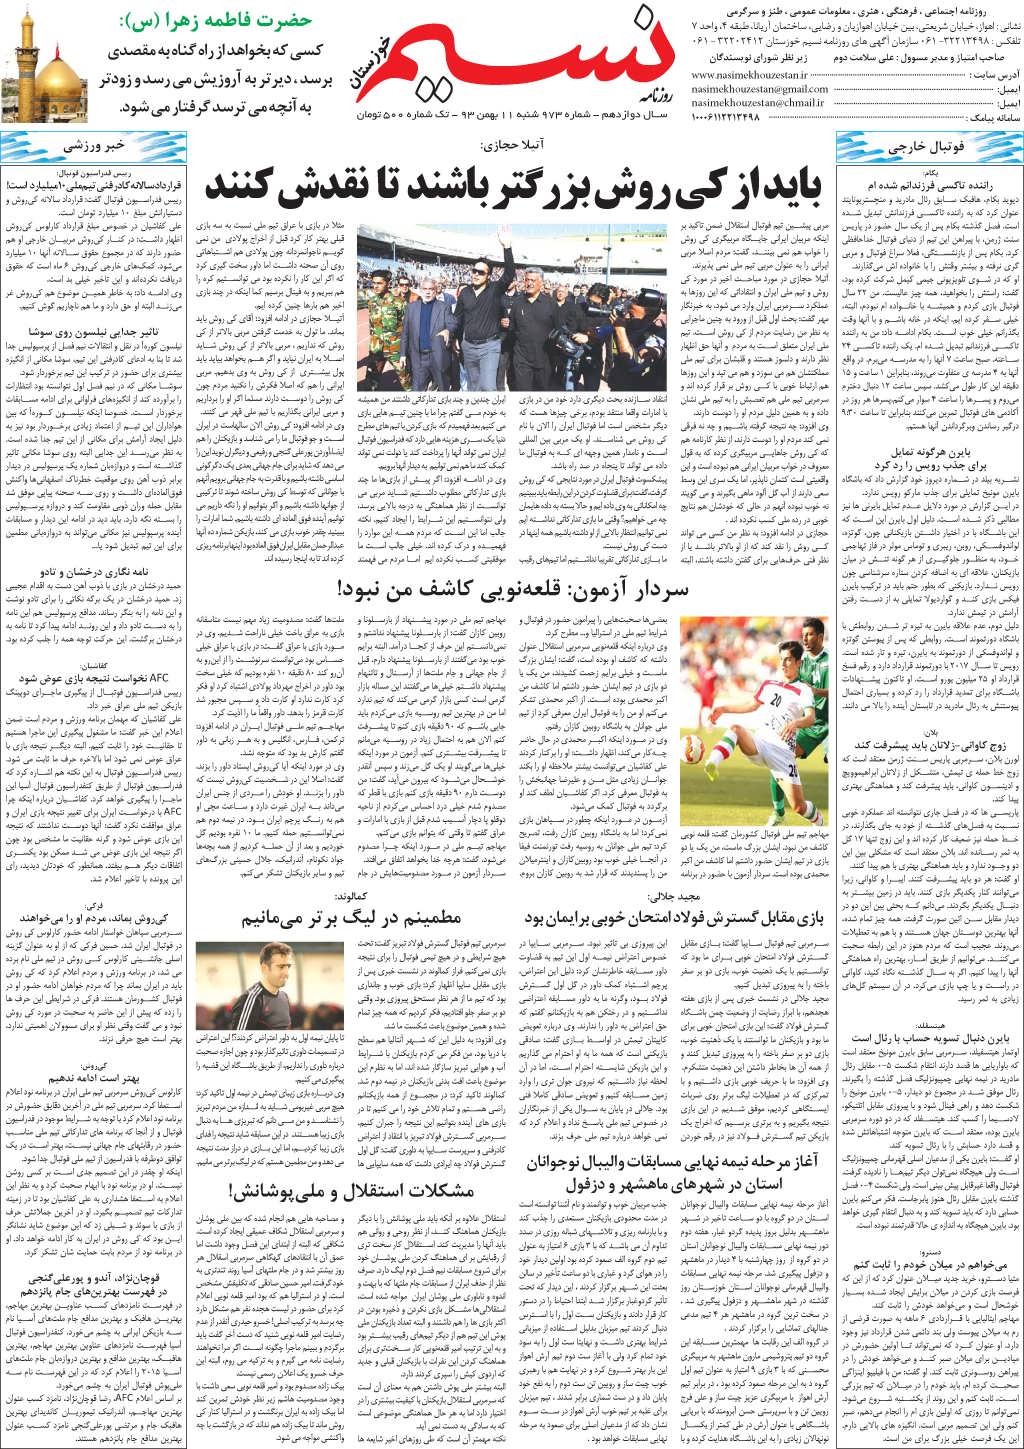 صفحه آخر روزنامه نسیم شماره 973